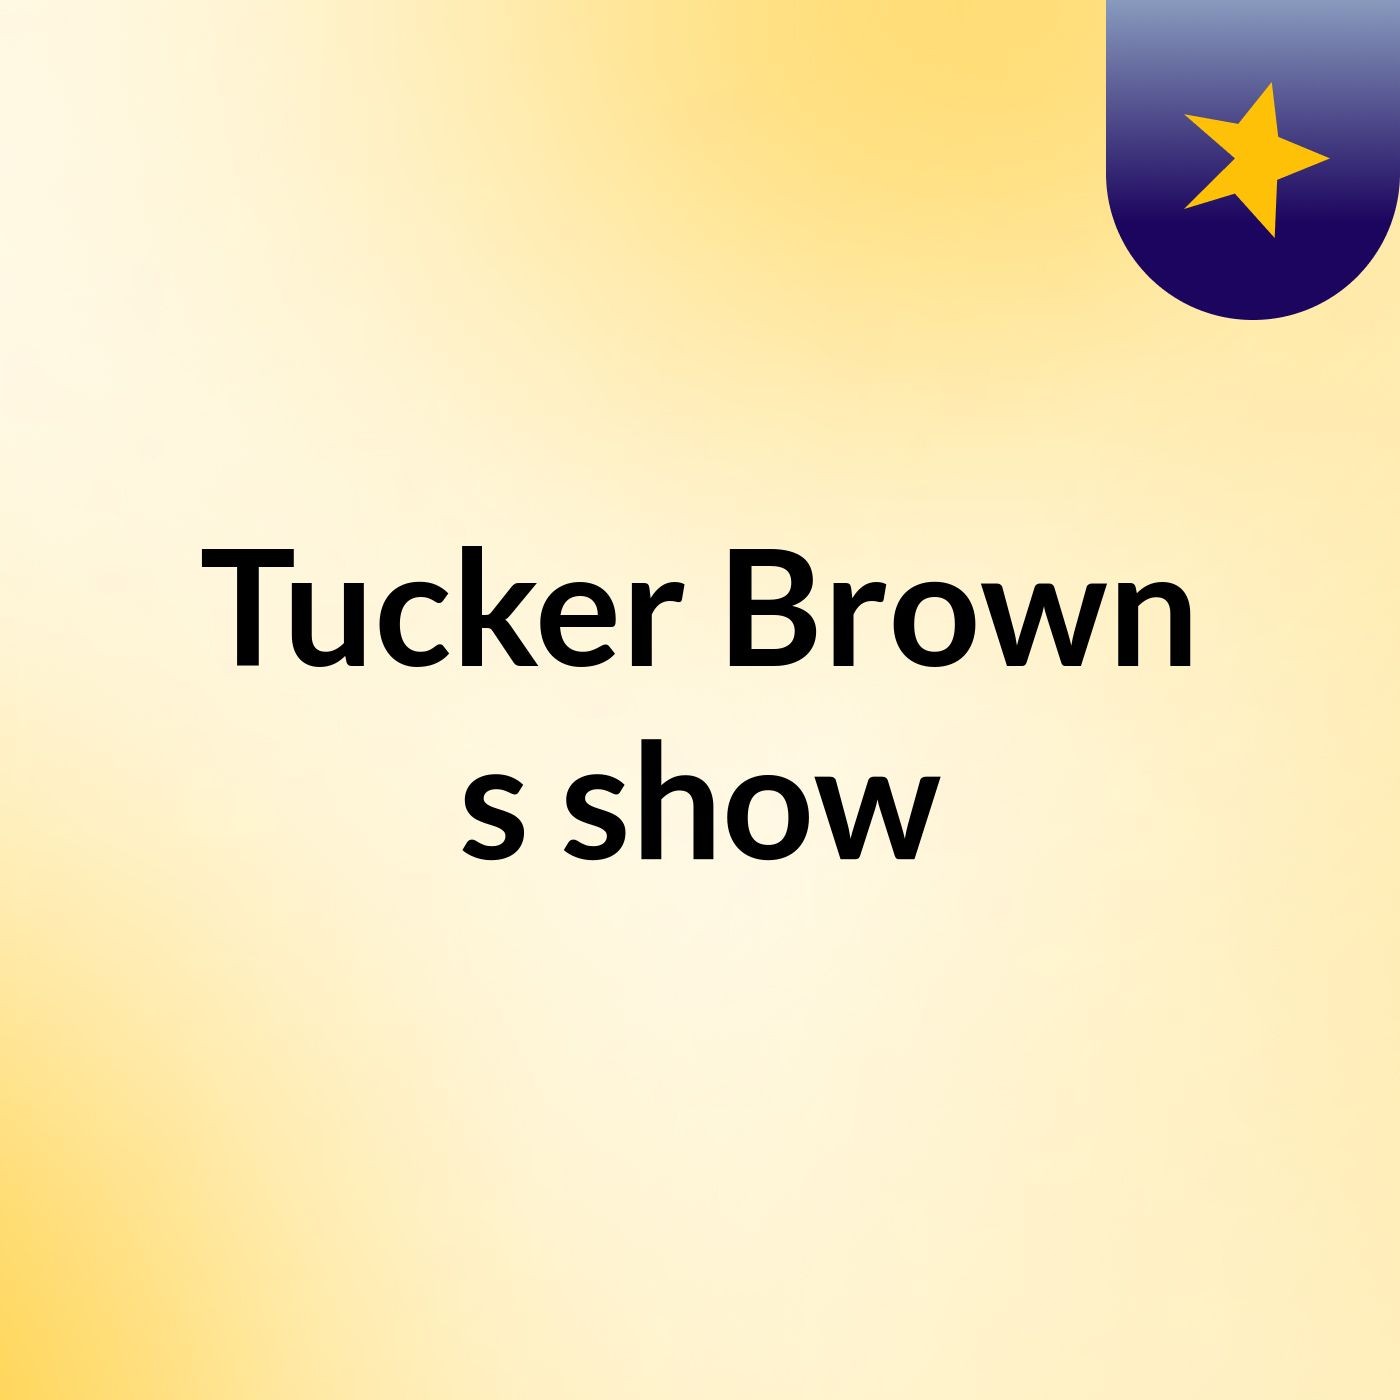 Tucker Brown's show